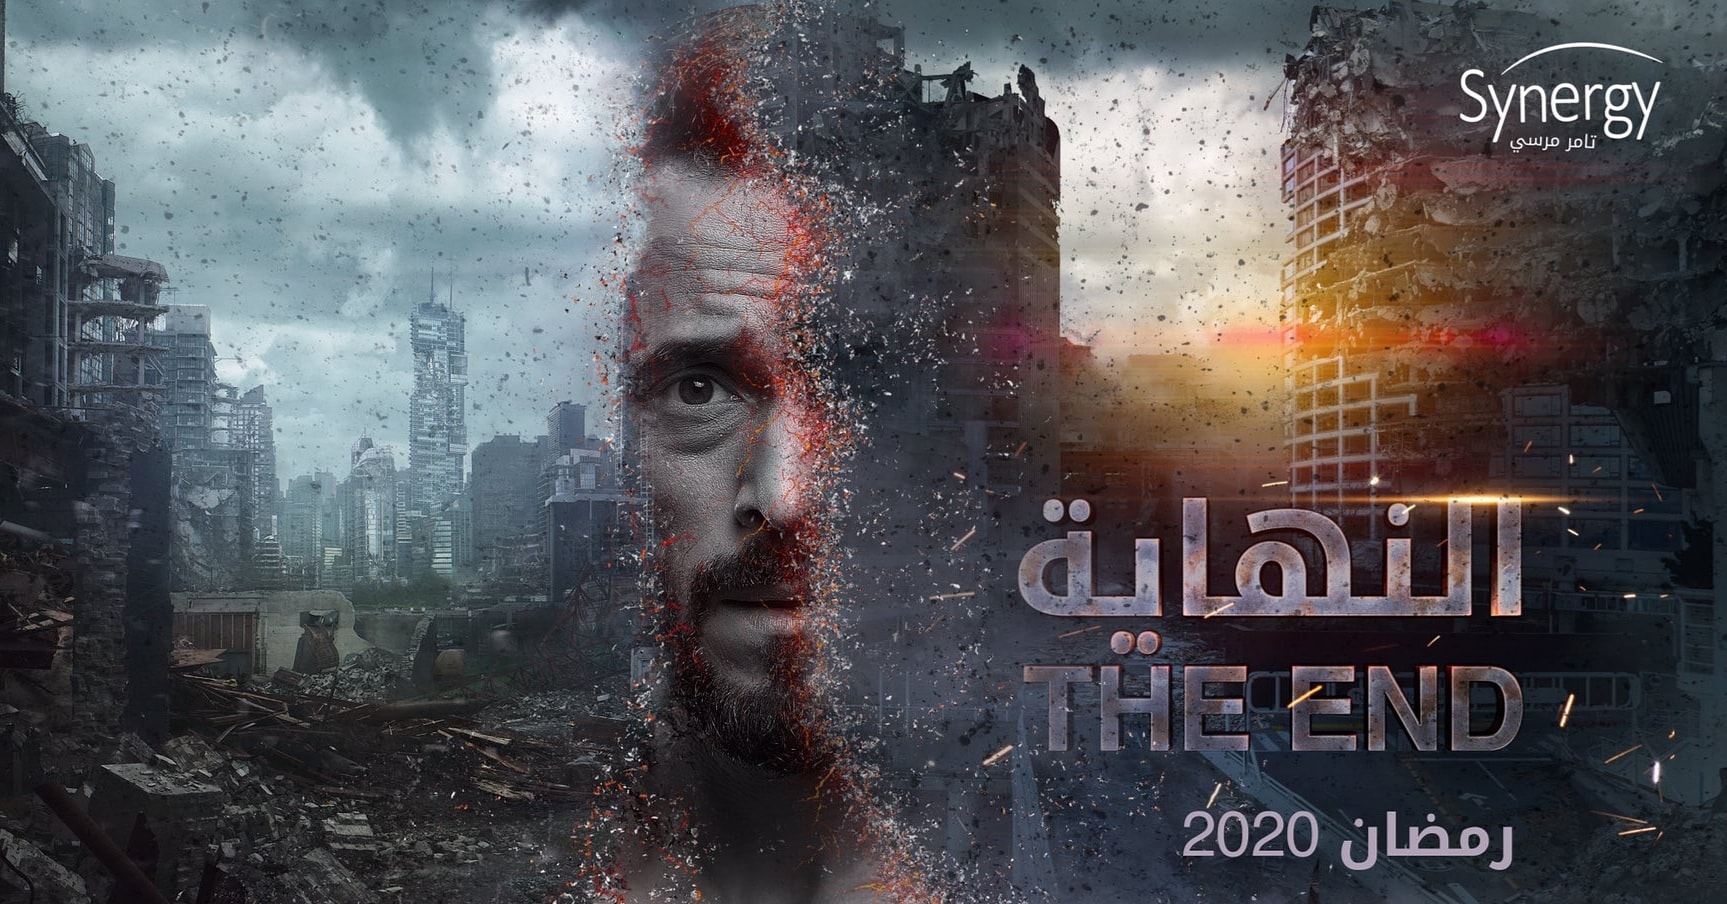 دراما رمضان 2020 بين الماضى والخيال مع الفتوة و النهاية وخالد بن الوليد اليوم السابع